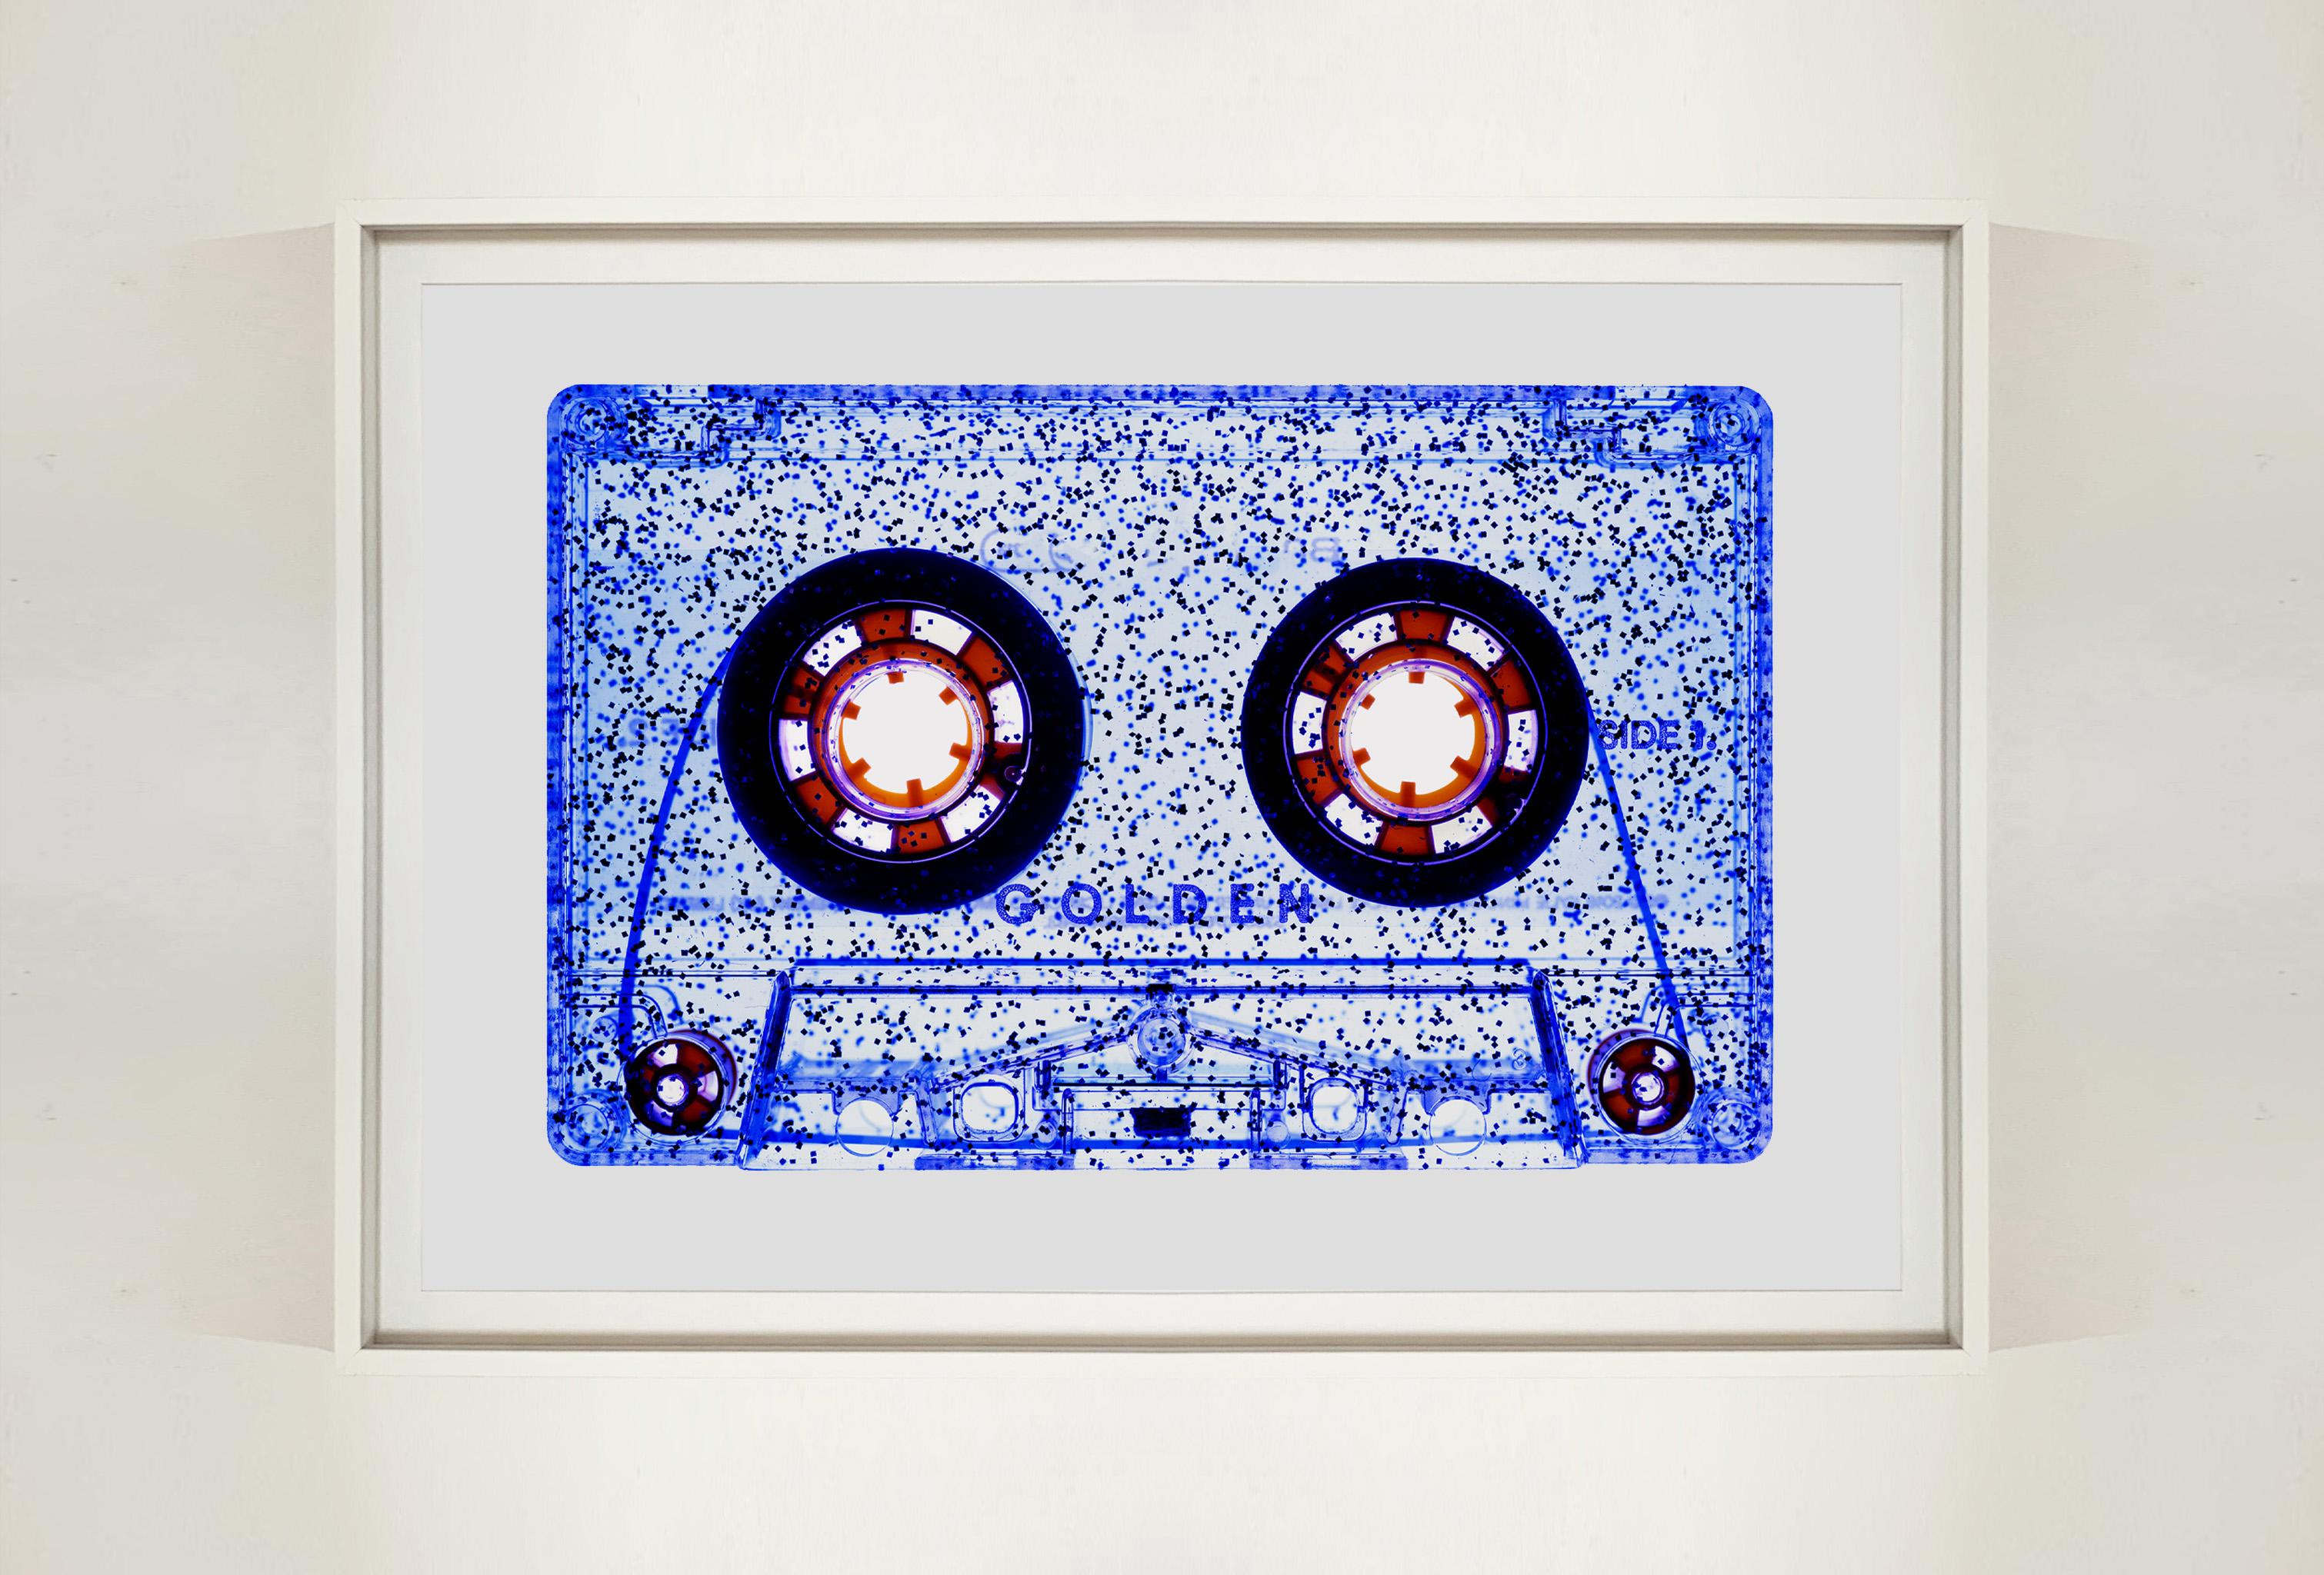 Tape-Kollektion, All That Glitters is Not Golden (Blau) – Pop-Art-Fotografie (Zeitgenössisch), Print, von Heidler & Heeps